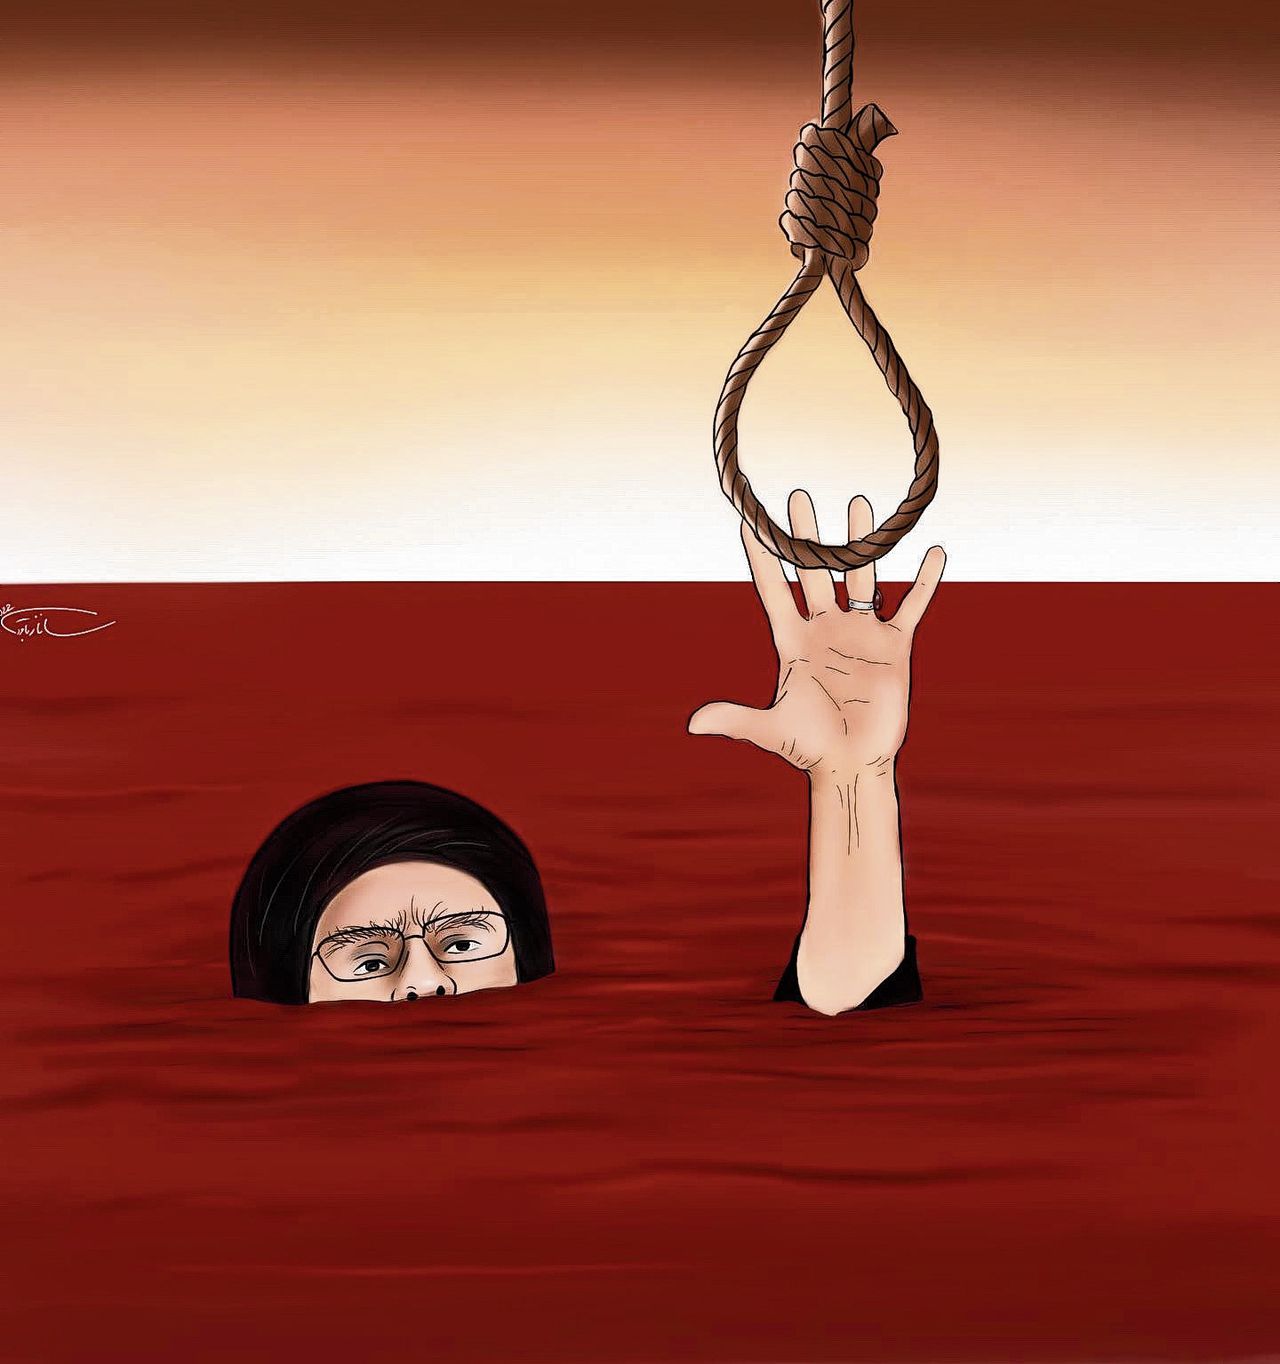 De cartoon van Sanaz Bagheri uit Charlie Hebdo.